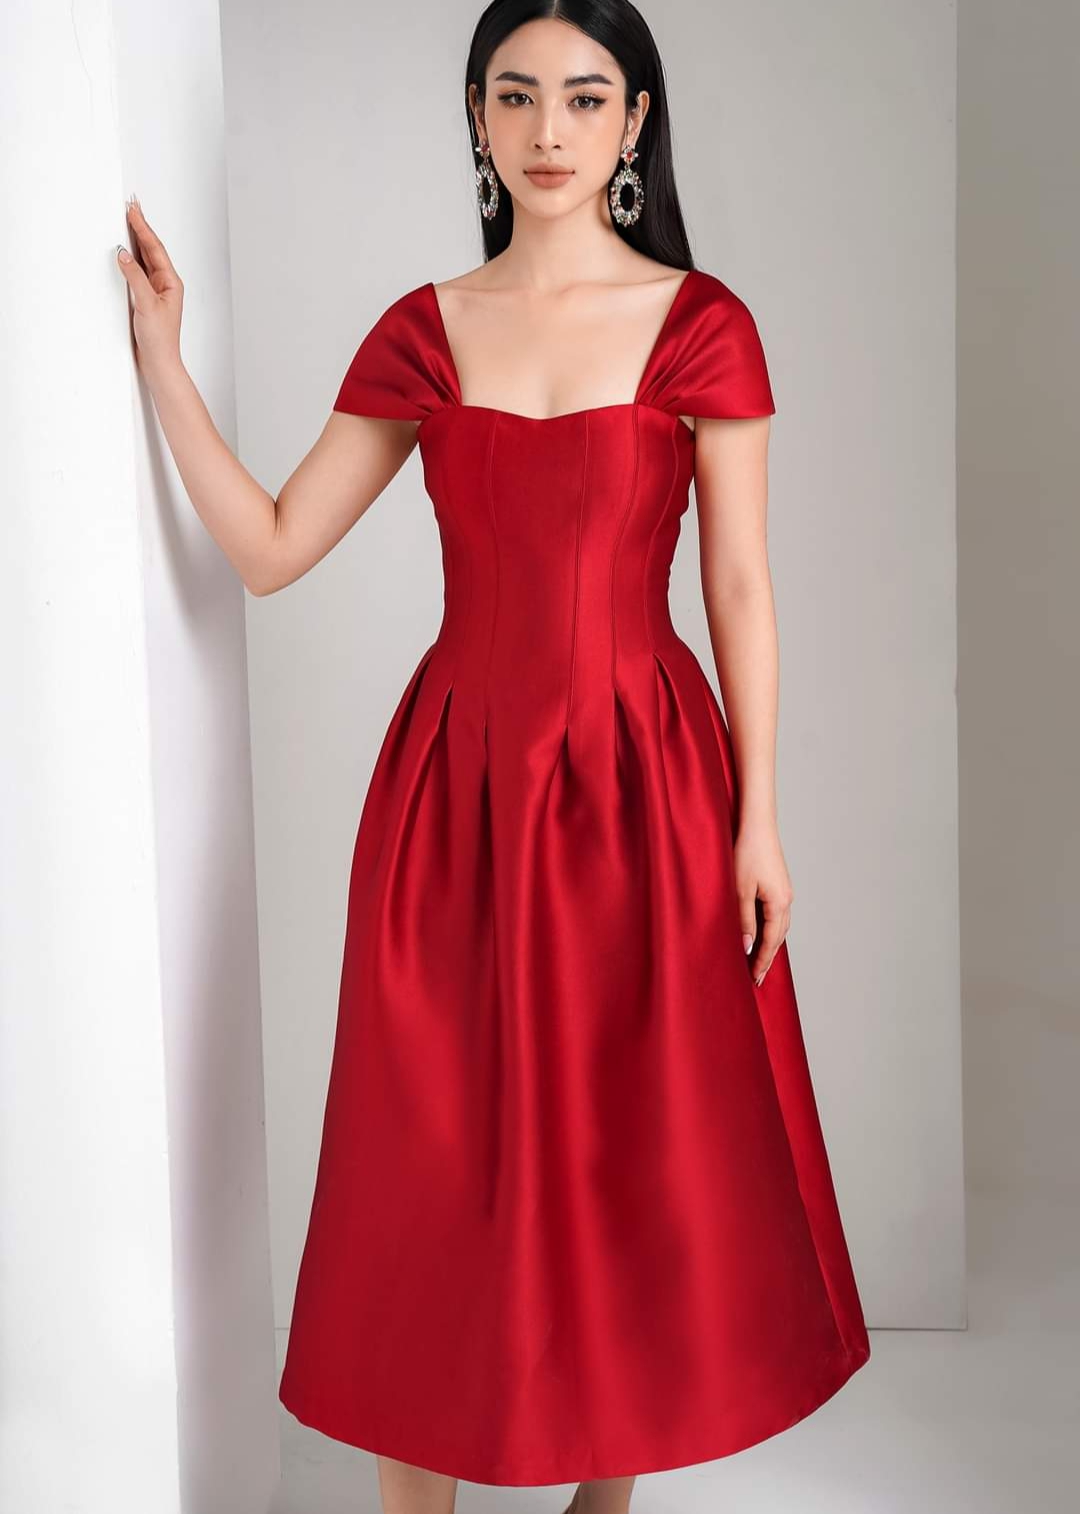 Váy dạ hội màu đỏ ôm body sang trọng, nổi bật | Váy dạ hội màu đỏ, Áo váy,  Phong cách thời trang